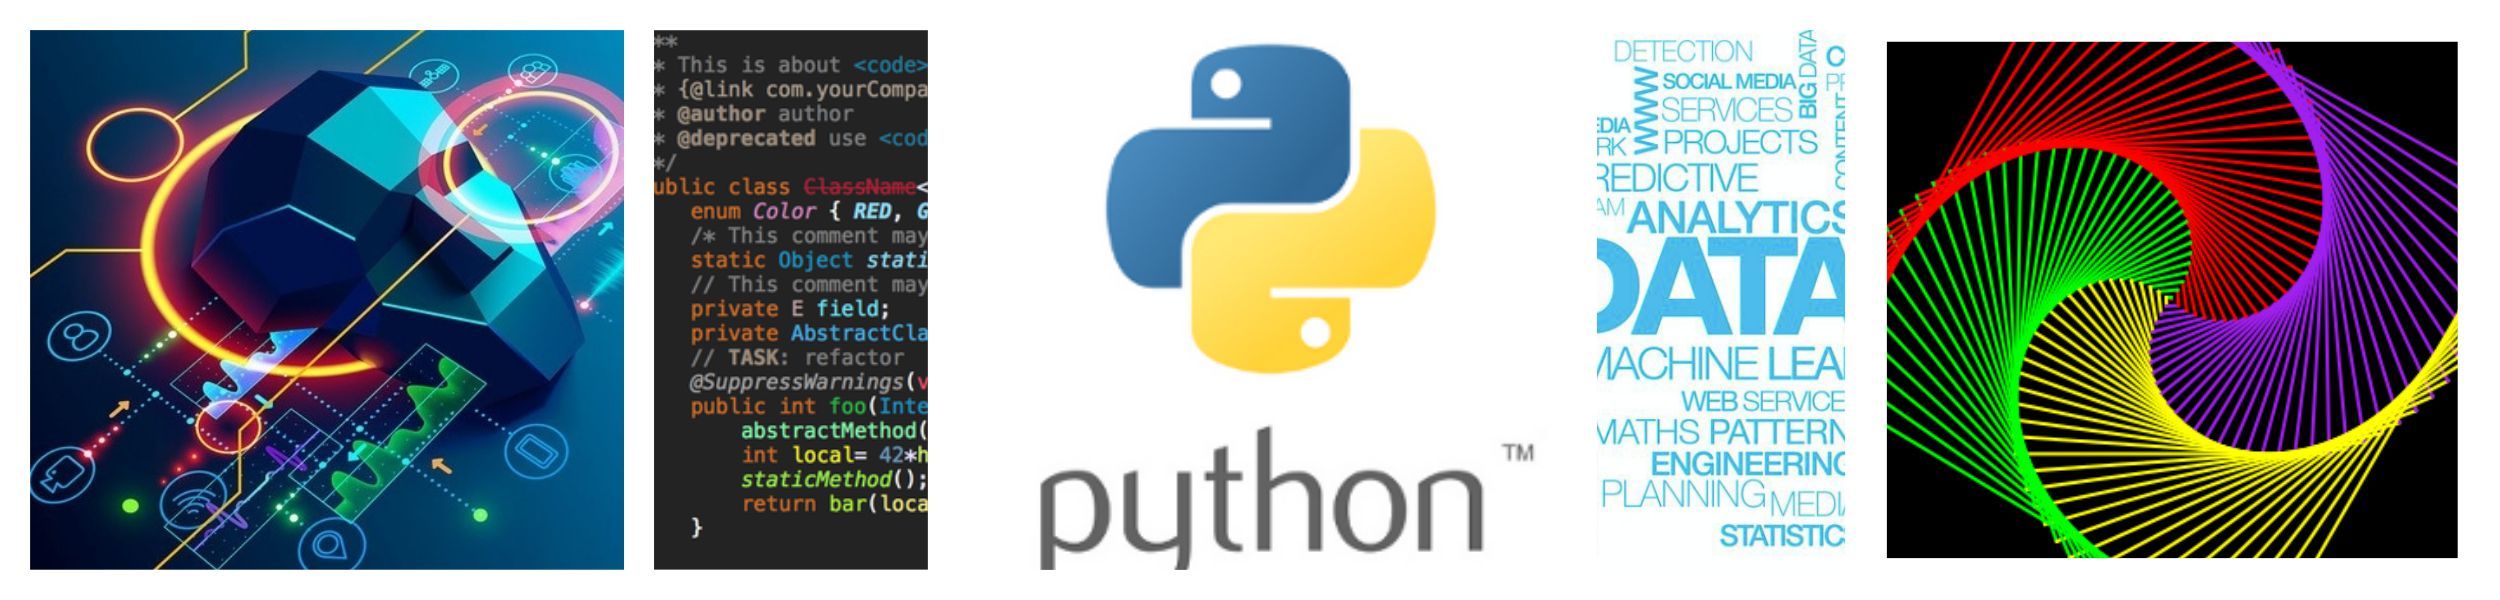 python-for-ai.jpg